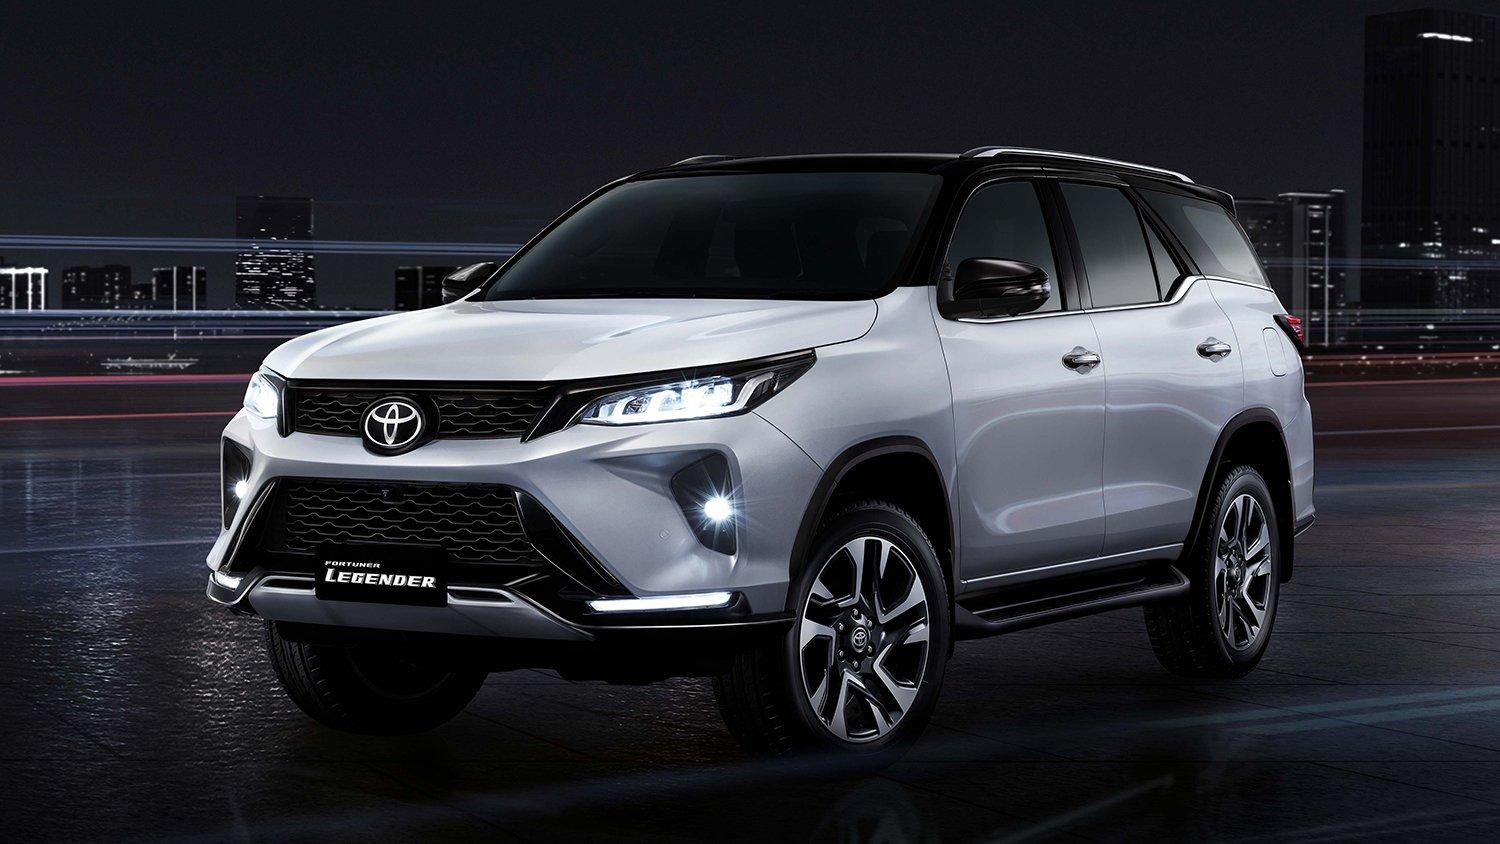 Đánh giá xe Toyota Fortuner 2021